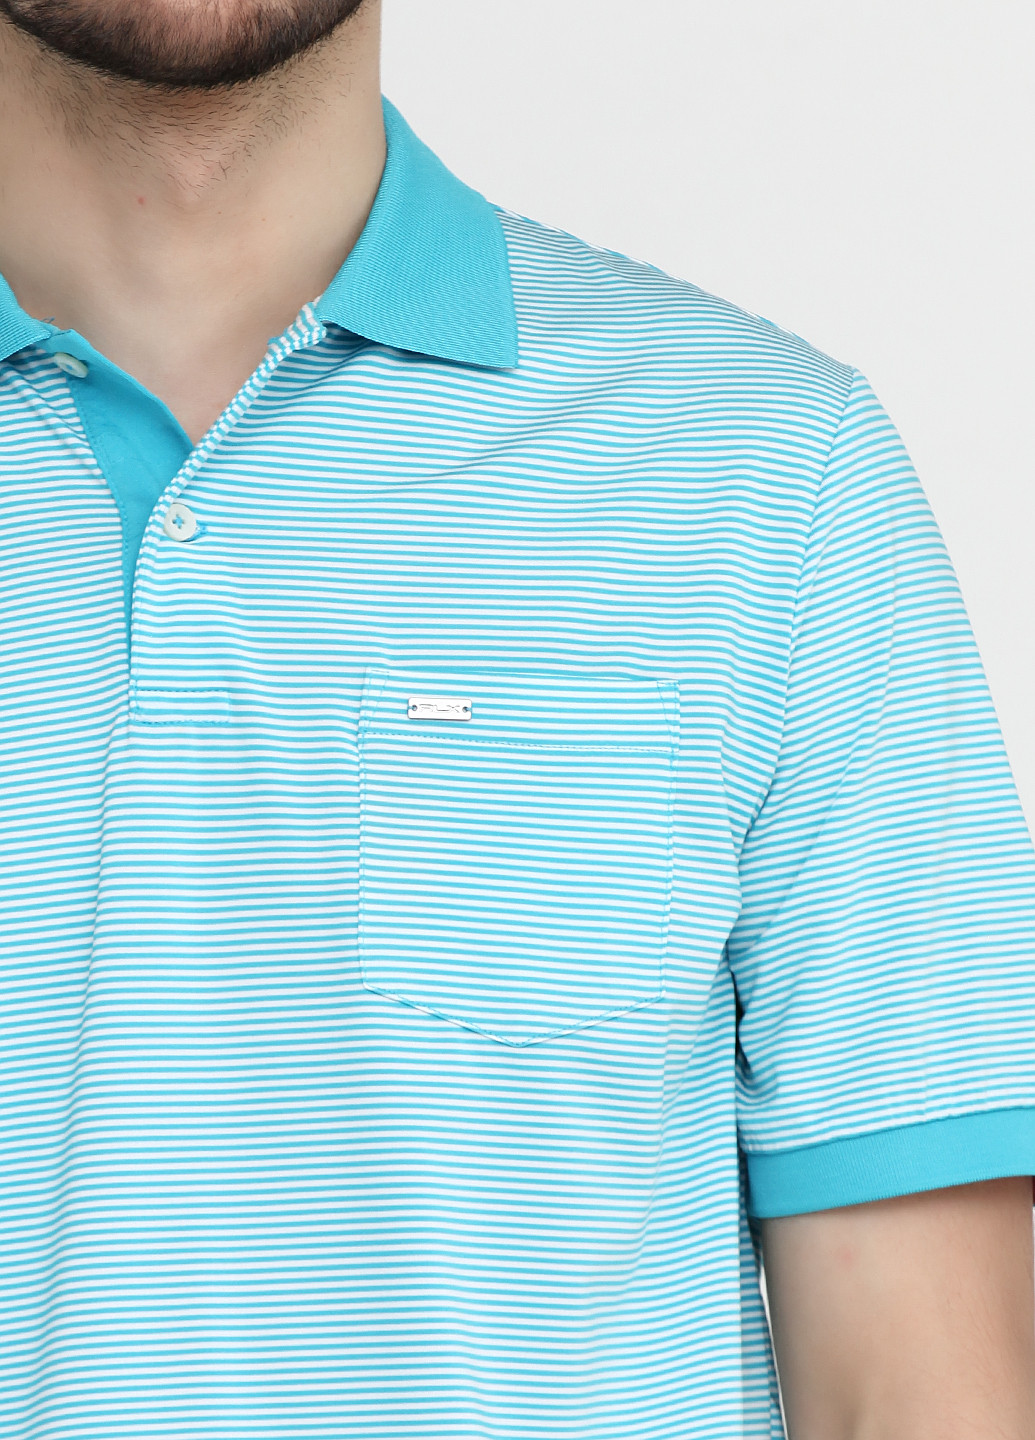 Голубой футболка-поло для мужчин Ralph Lauren с логотипом